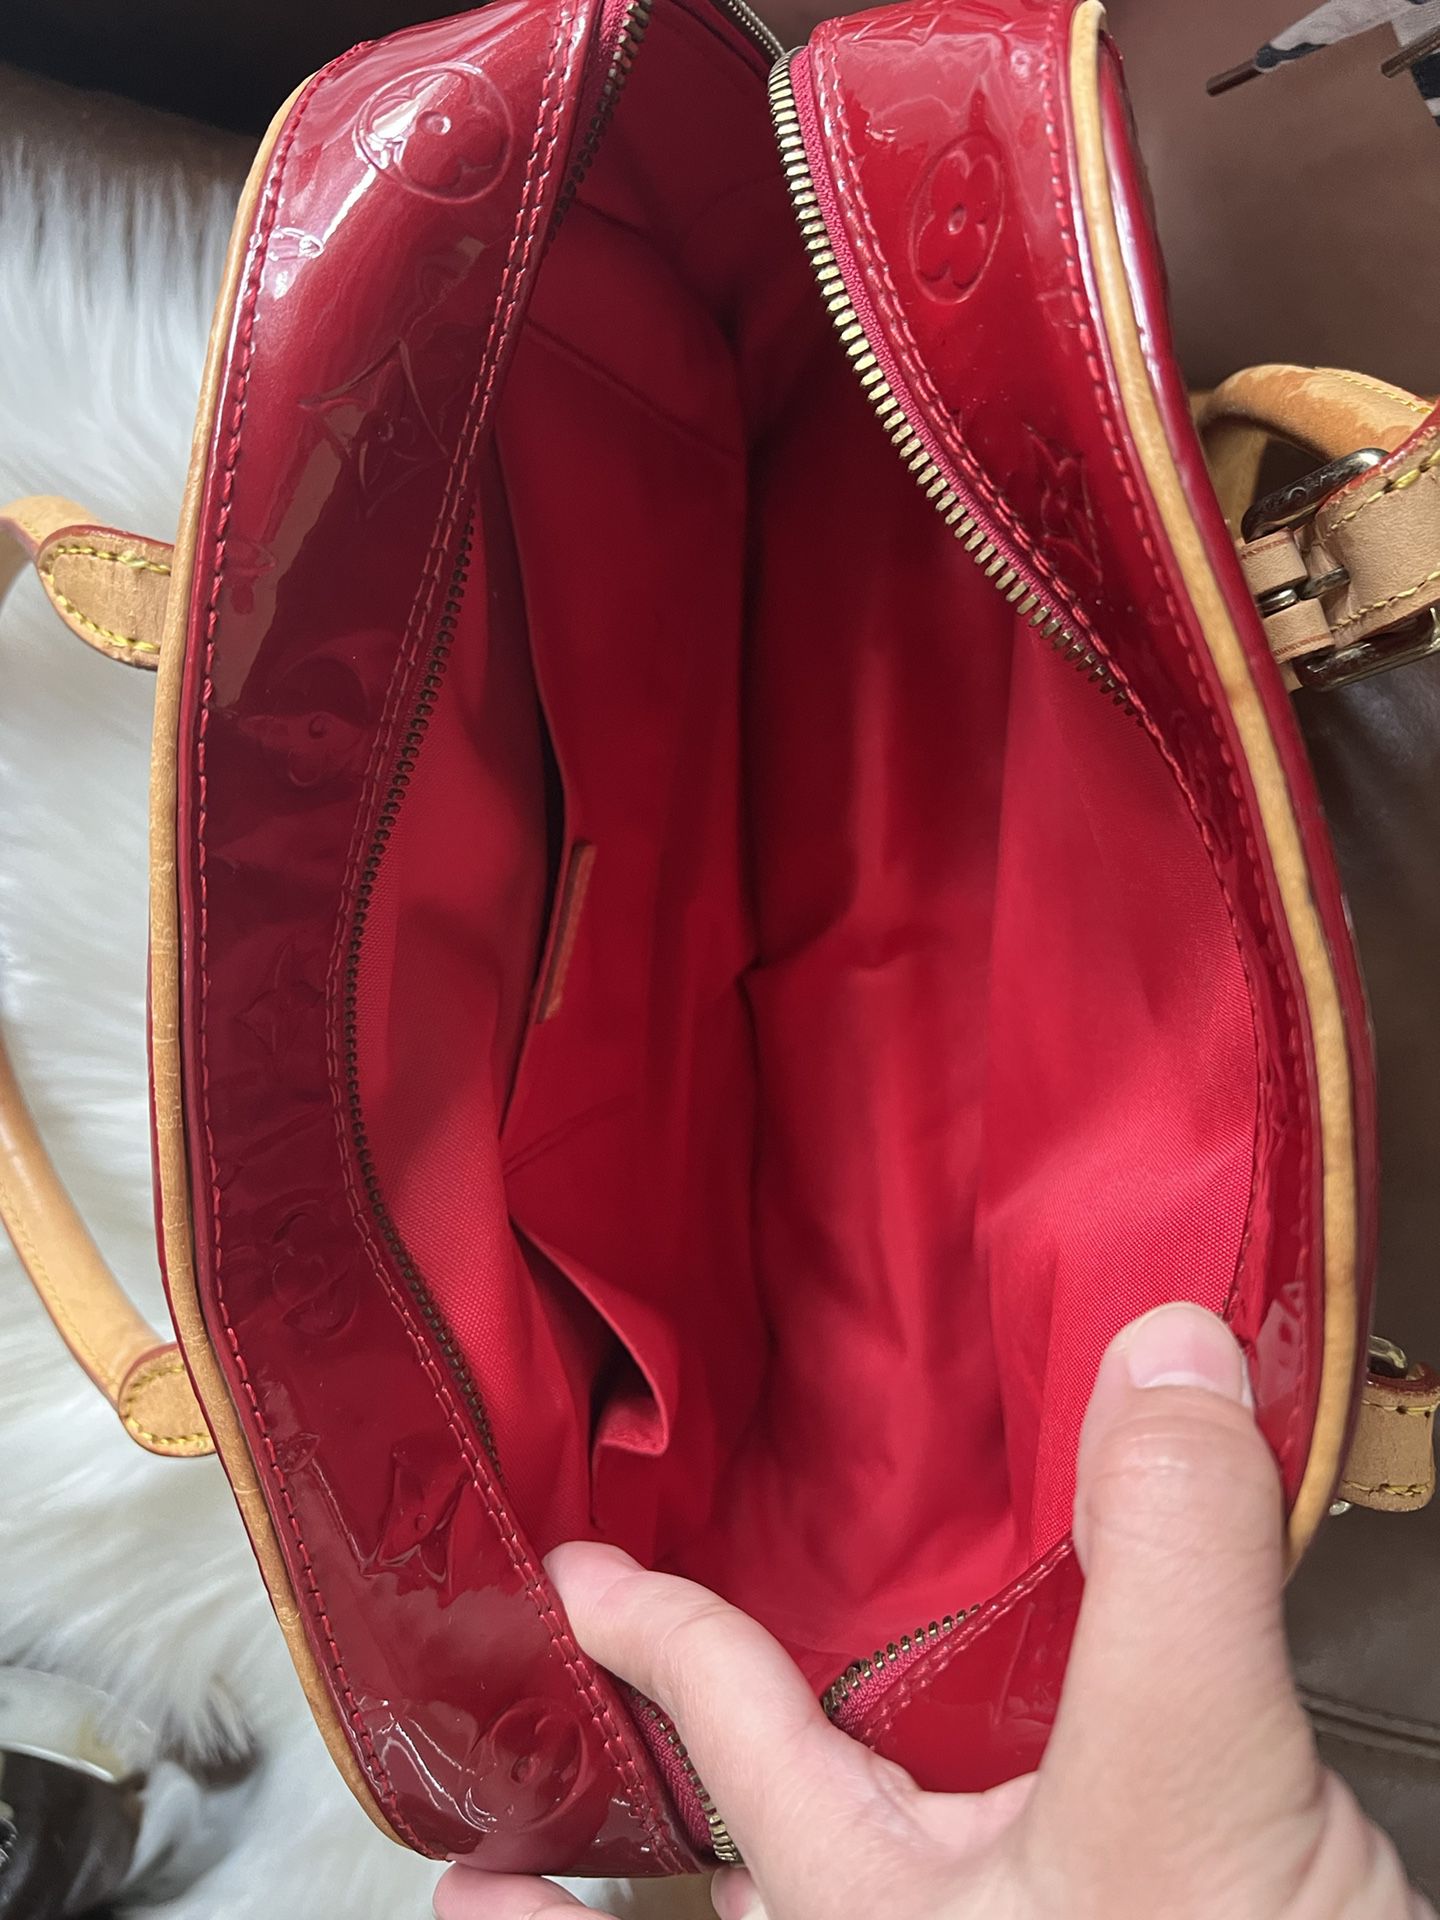 Epi Red LV Shoulder/Handbag